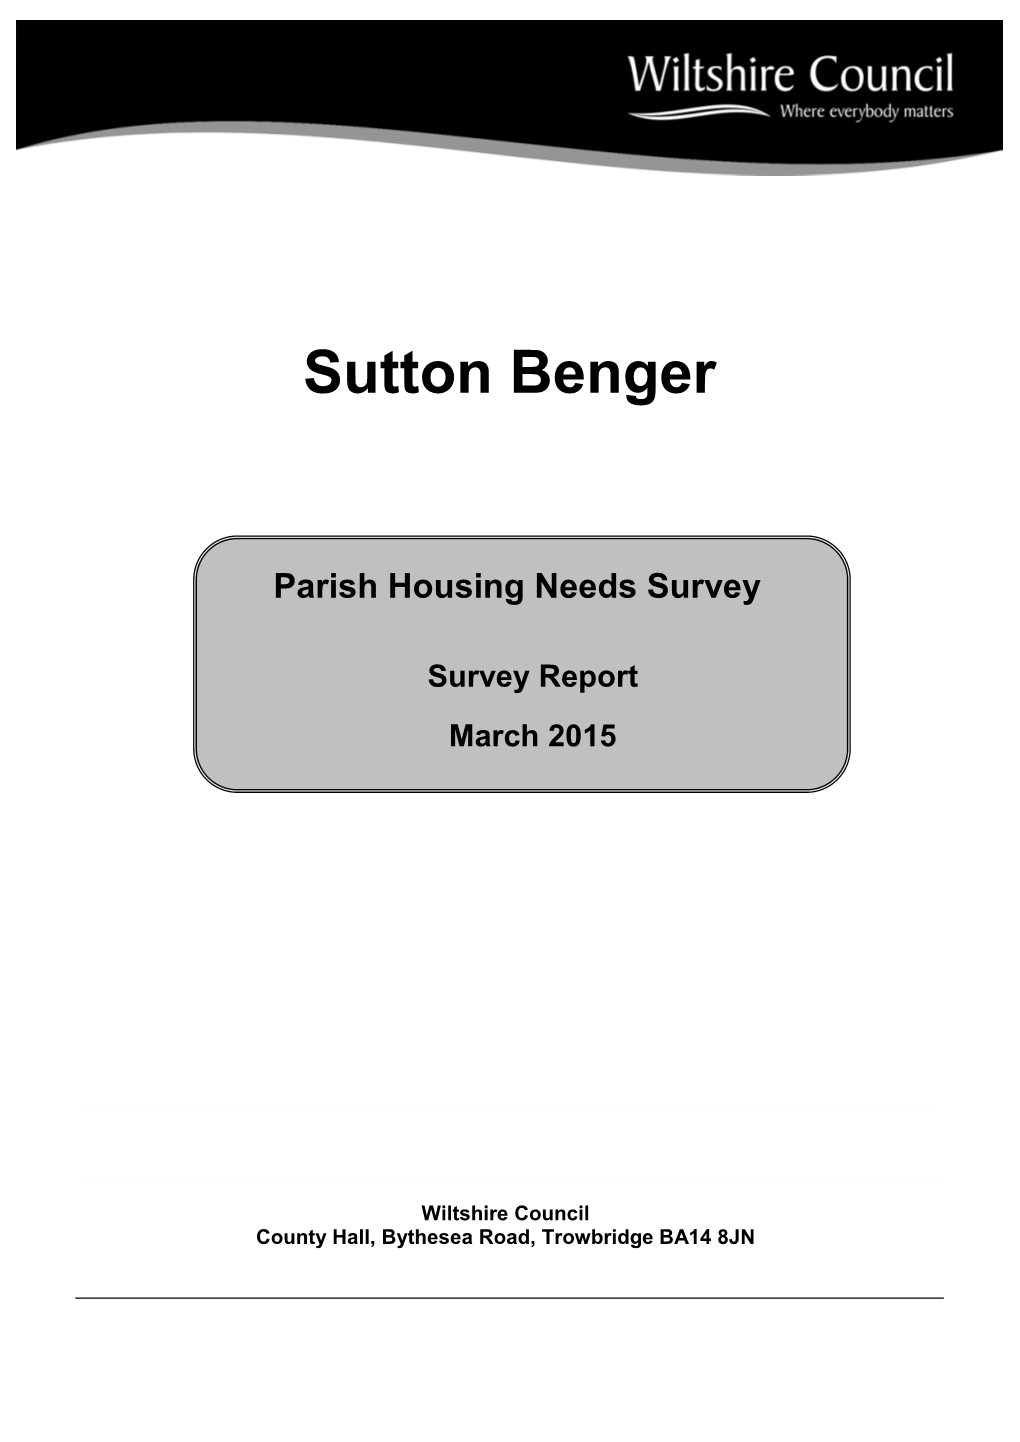 Sutton Benger Parish Council